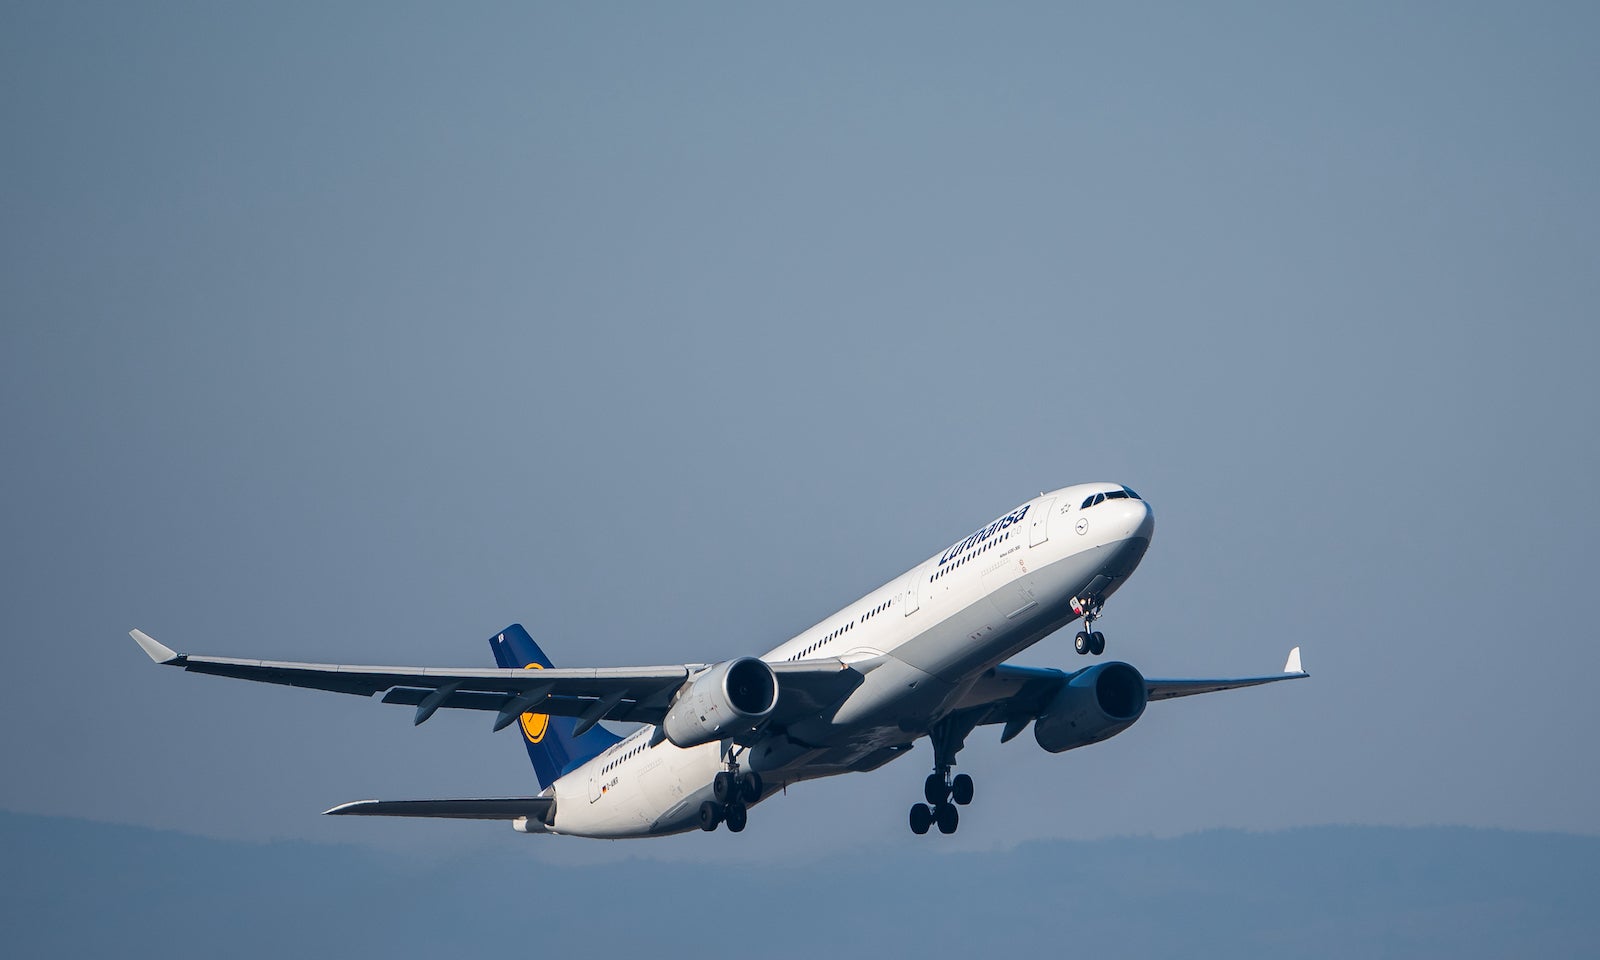 Passenger aircraft Lufthansa